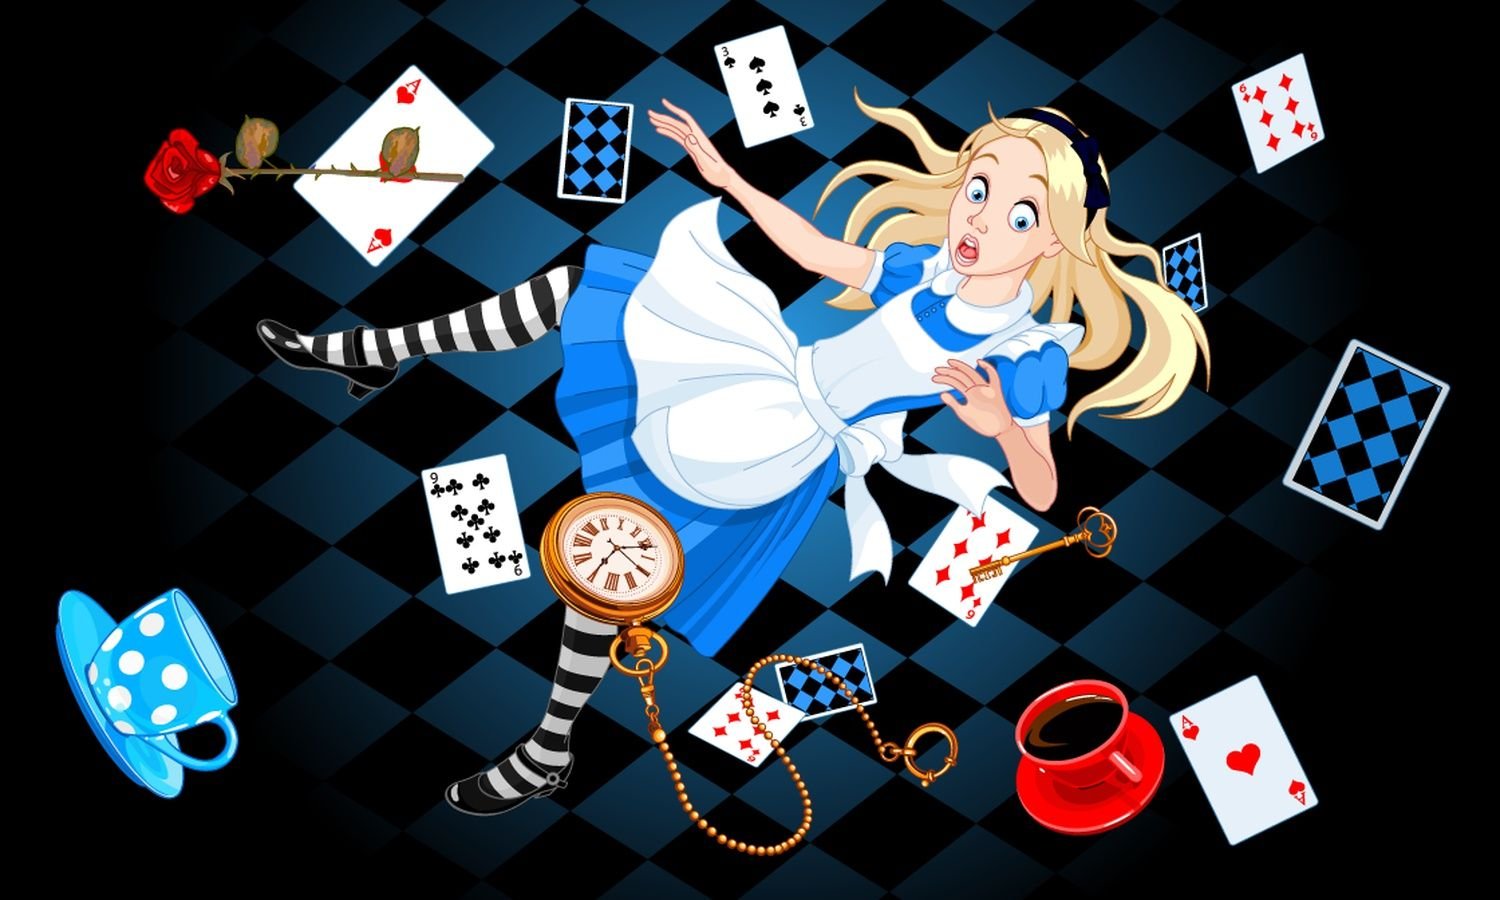 Алиса в стране чудес первая глава. Алиса в стране чудес. Алиса в стране чудес Алиса. Кэрролл Льюис "Алиса в стране чудес". Алиса в стране чудес персонажи иллюстрации.